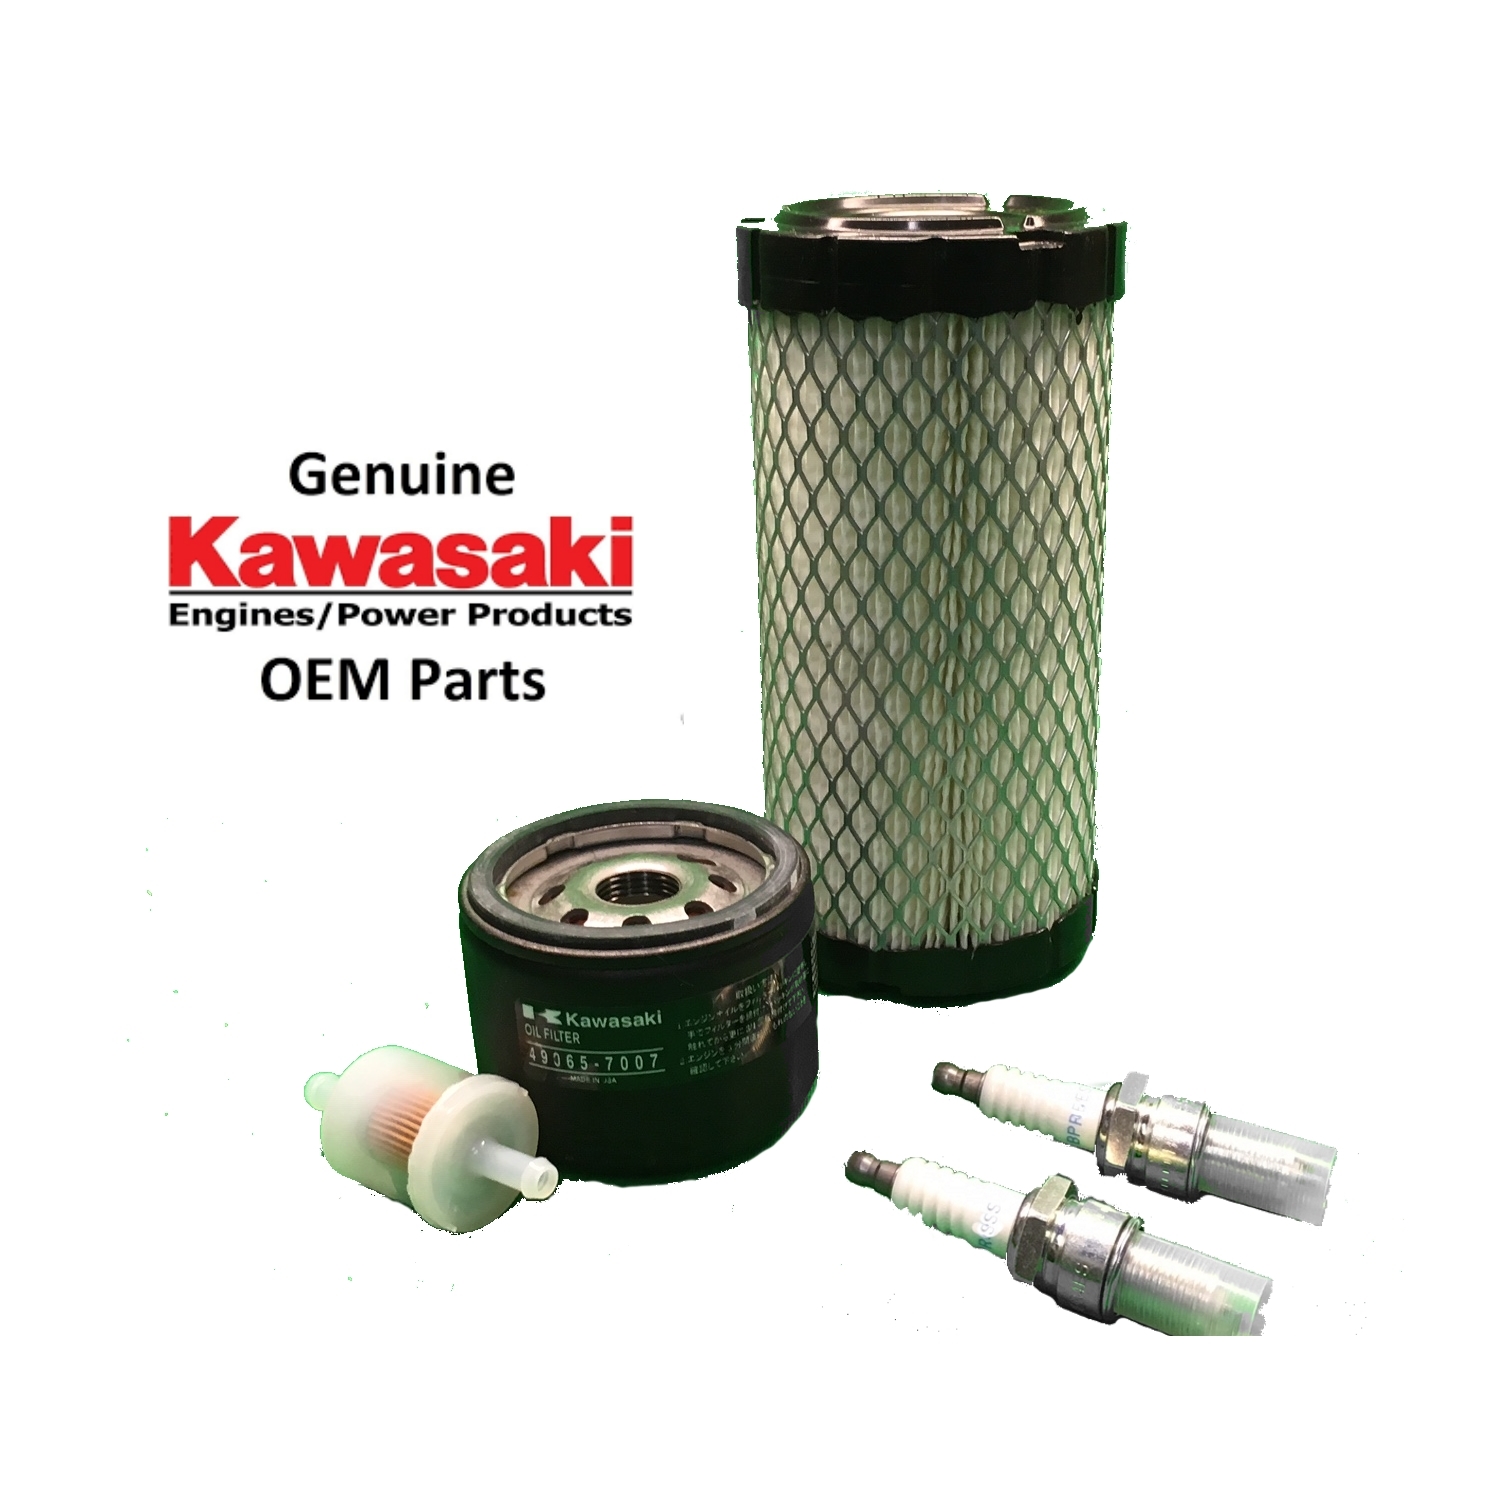 OEM Kit For FX481V, FX541V, FX600V - Power Tool